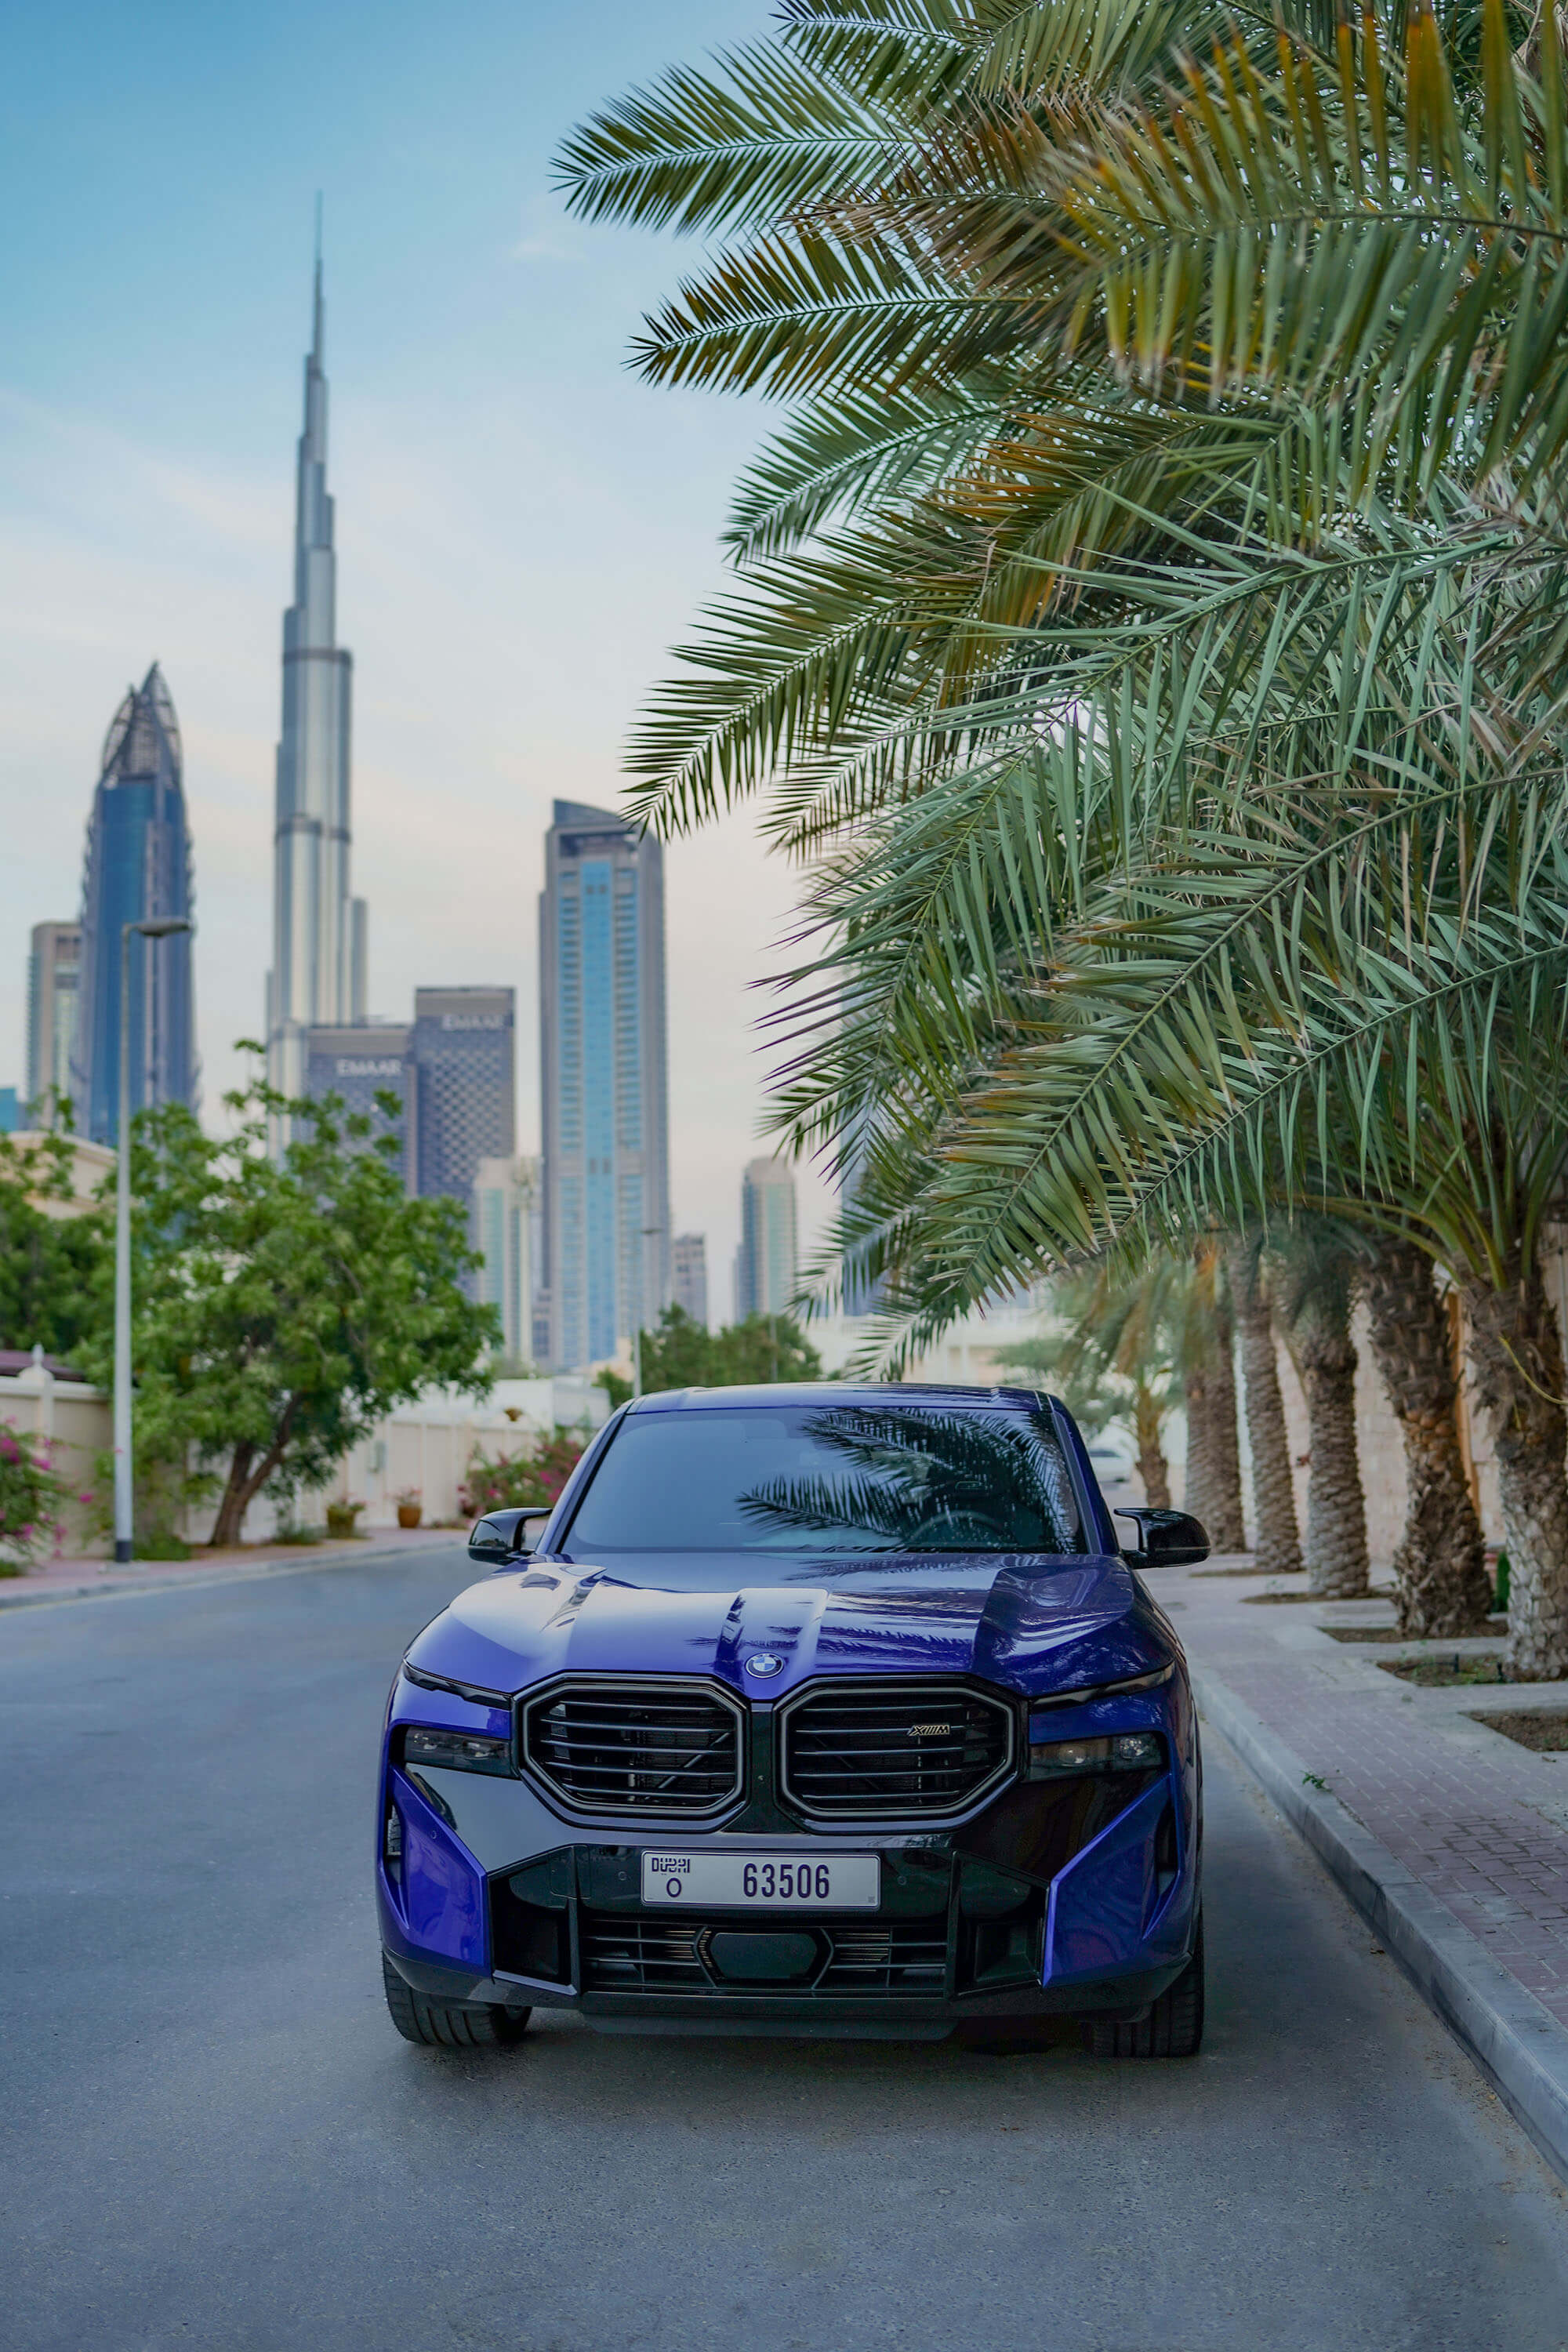 Lej BMW XM i Dubai